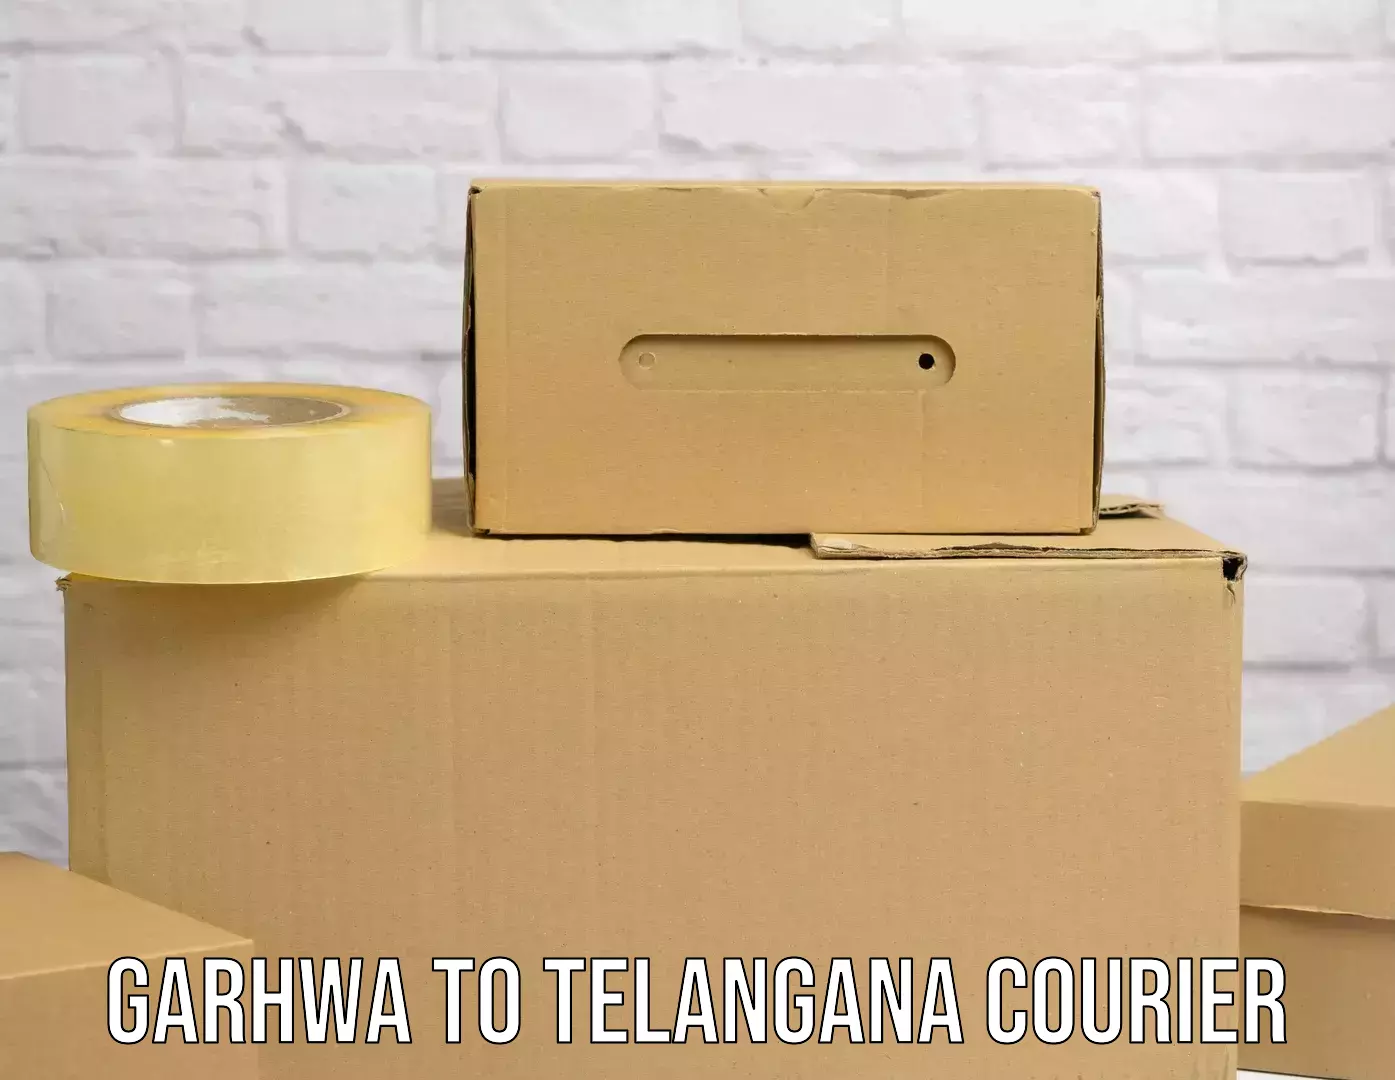 Door-to-door shipment Garhwa to Narayanpet